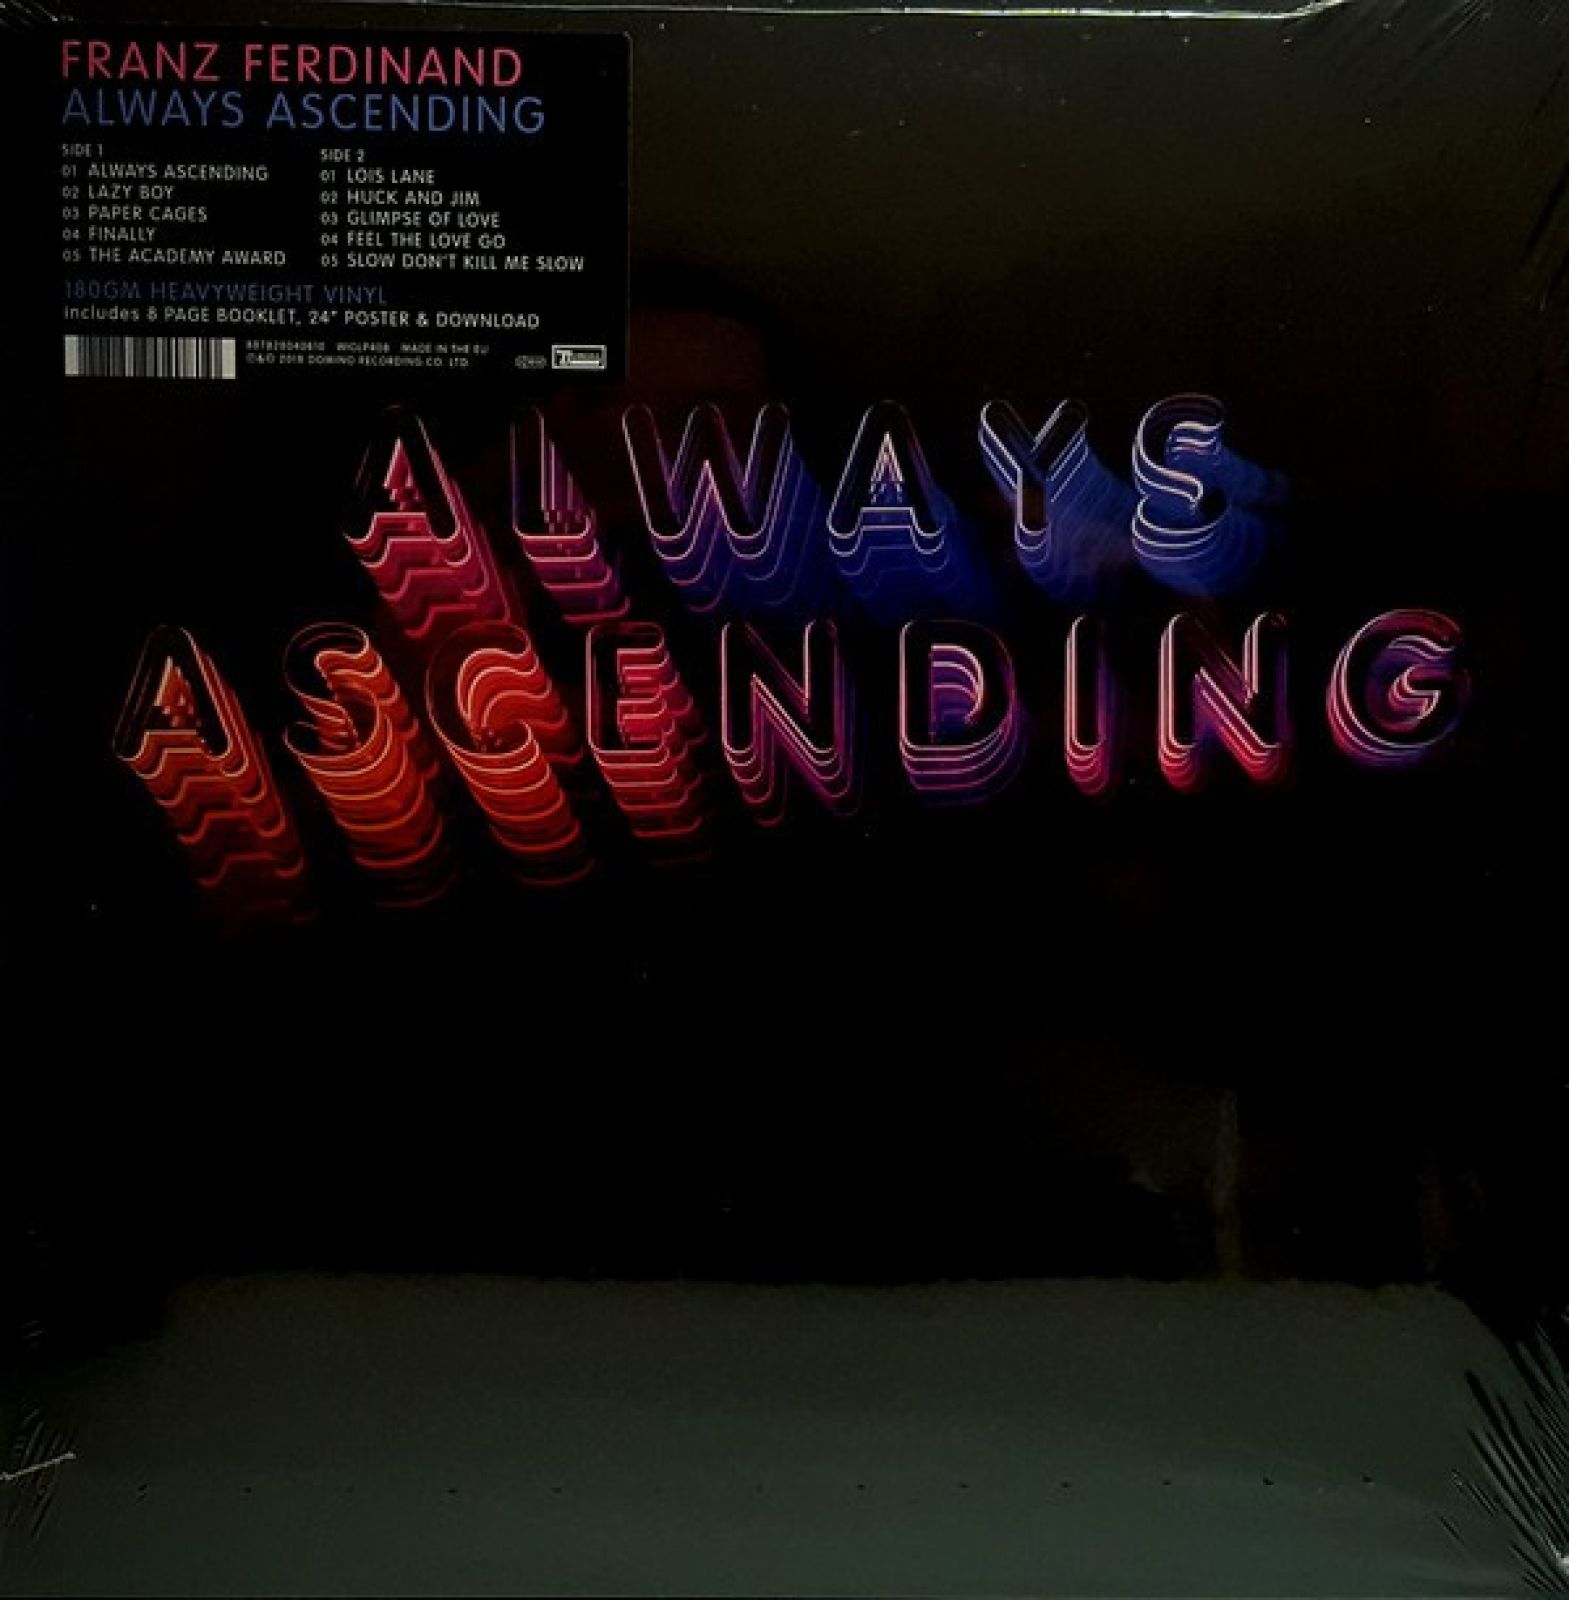 0887828040810 виниловая пластинка franz ferdinand always ascending 0887828040810, Виниловая пластинка Franz Ferdinand, Always Ascending